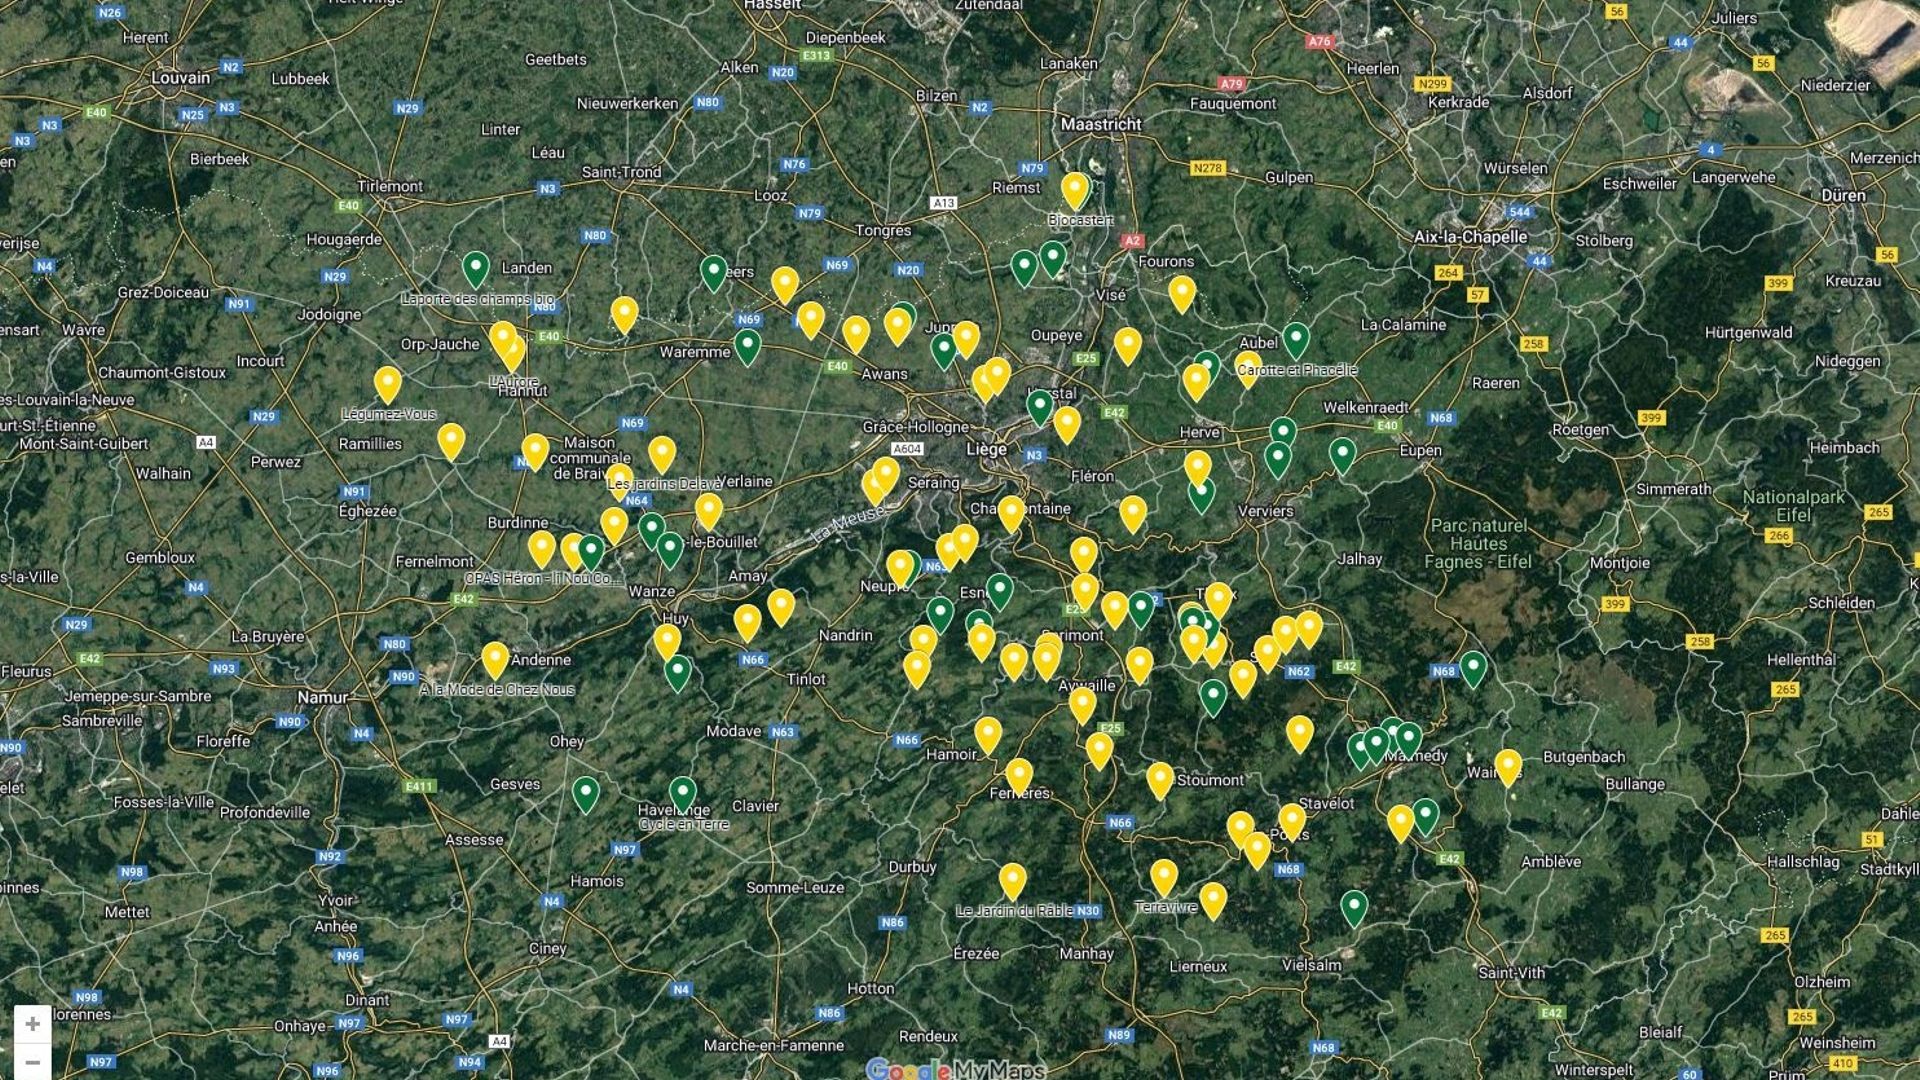 Capture d’écran : la carte des maraîchers de la province de Liège publiée sur le site de la Ceinture Aliment-Terre Liégeoise